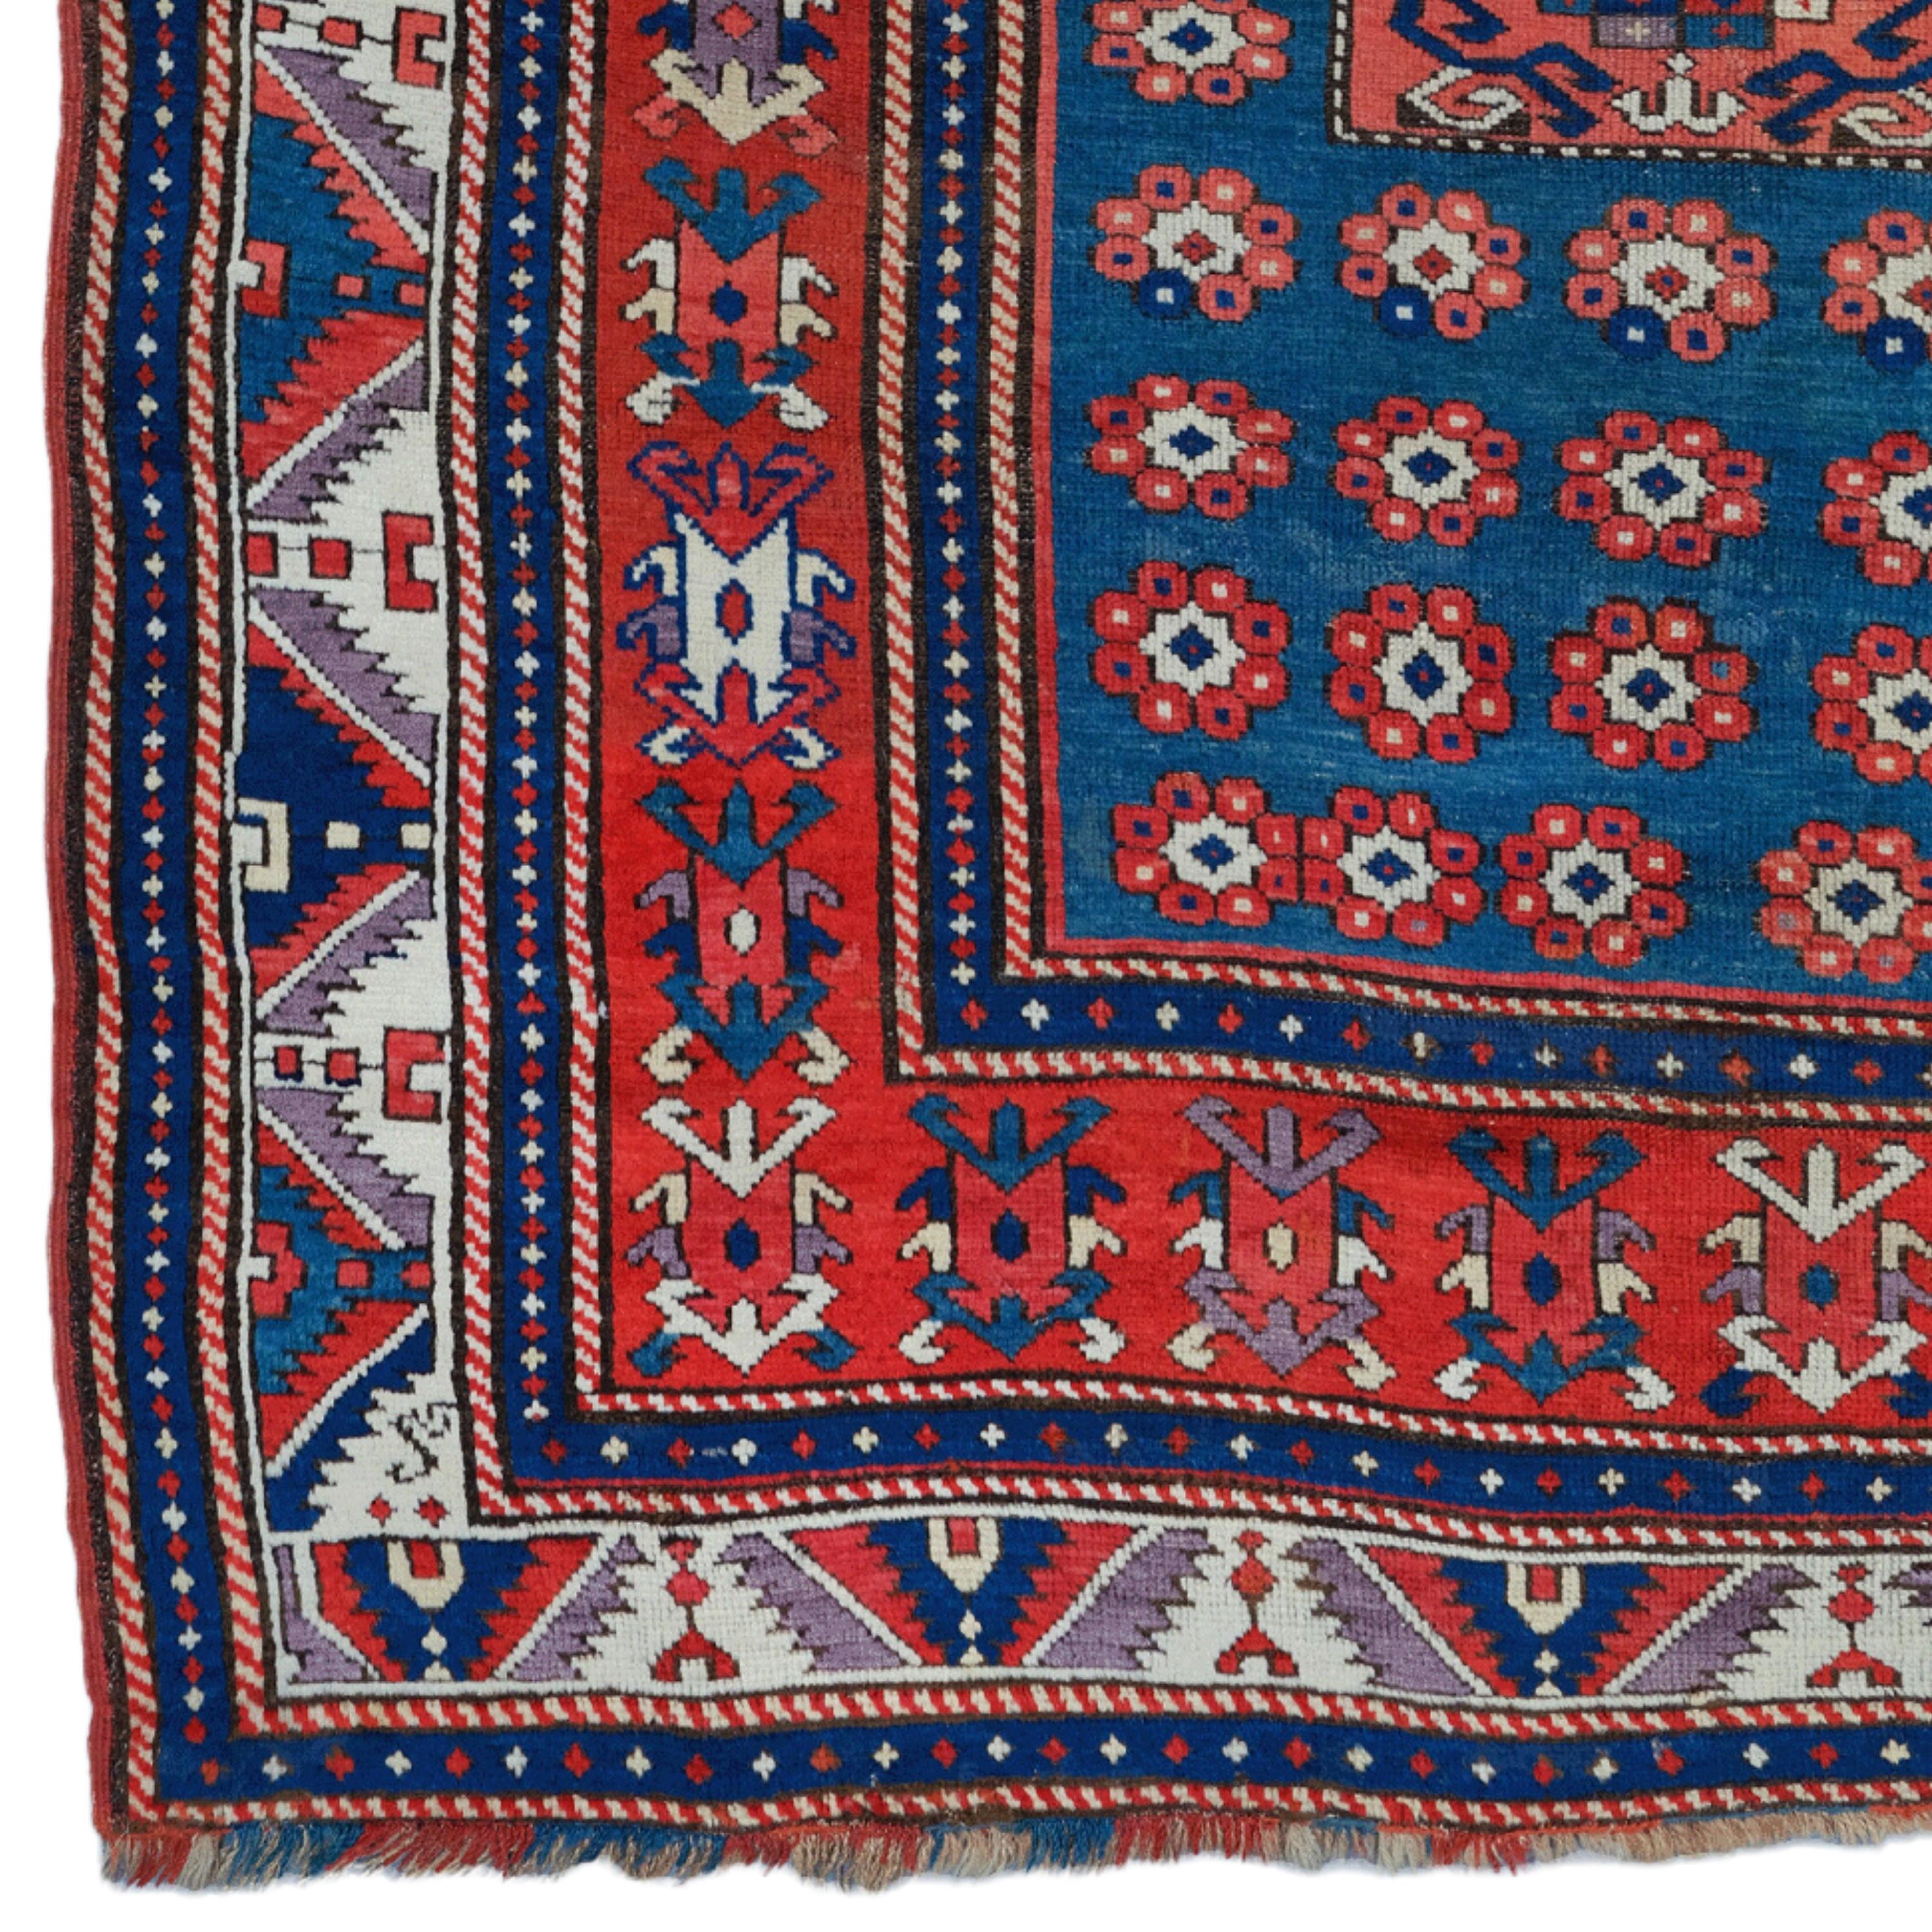 Kaukasischer Teppich aus dem 19. Jahrhundert - Antiker handgewebter Teppich

Dieser elegante kaukasische Teppich aus dem 19. Jahrhundert ist die perfekte Wahl für diejenigen, die einen historischen Touch und eine anspruchsvolle Ästhetik suchen.